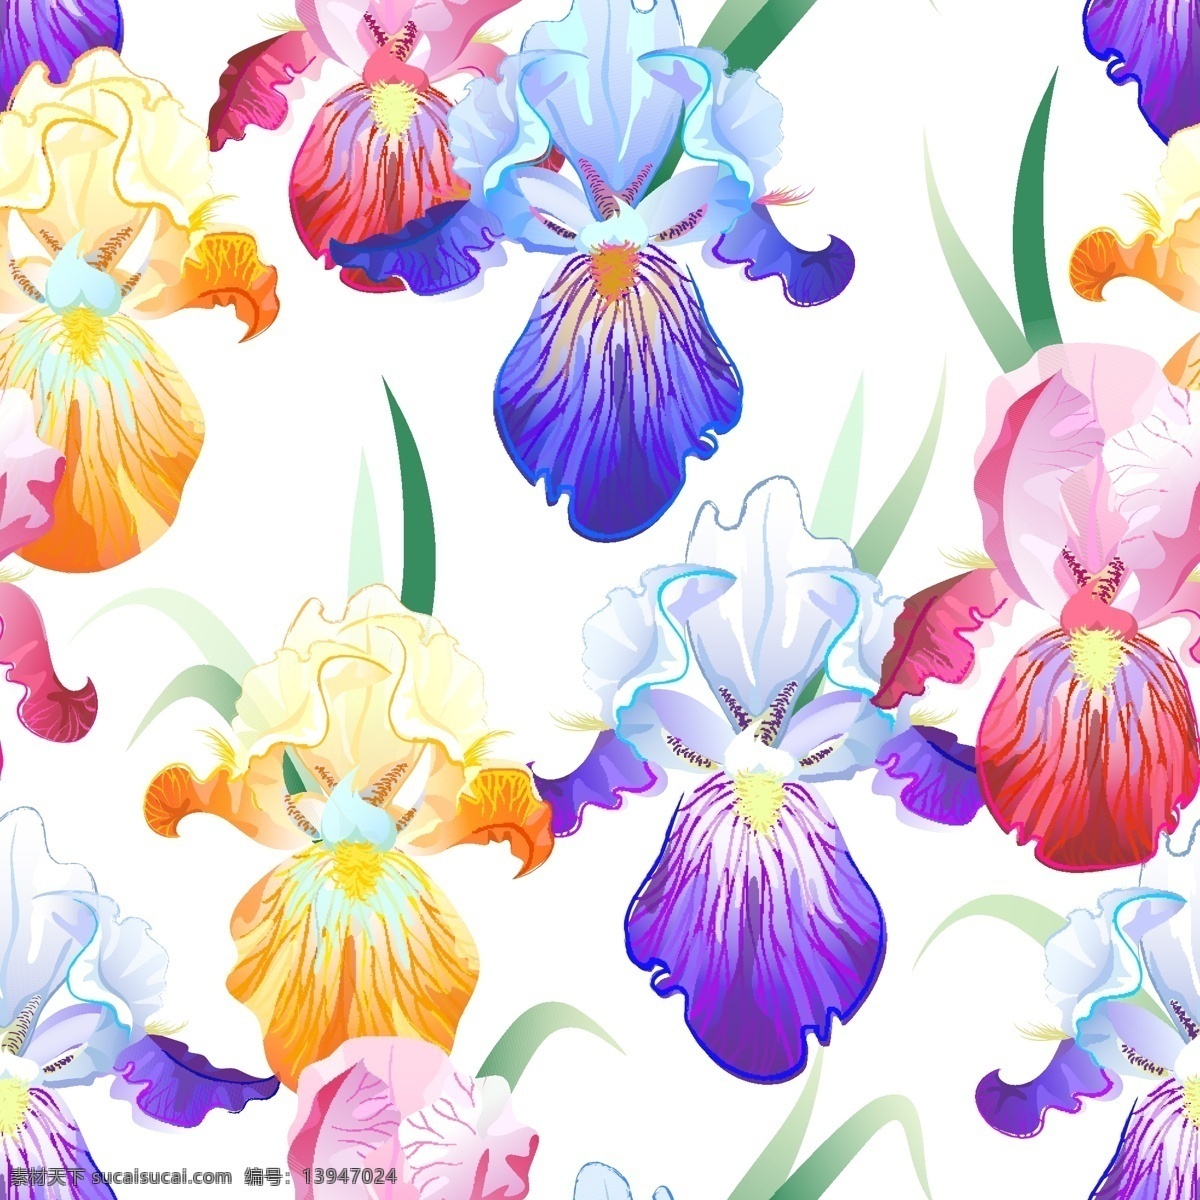 鸢尾花 背景 插画 花朵 花卉 植物 背景素材 花纹花边 底纹边框 矢量素材 白色